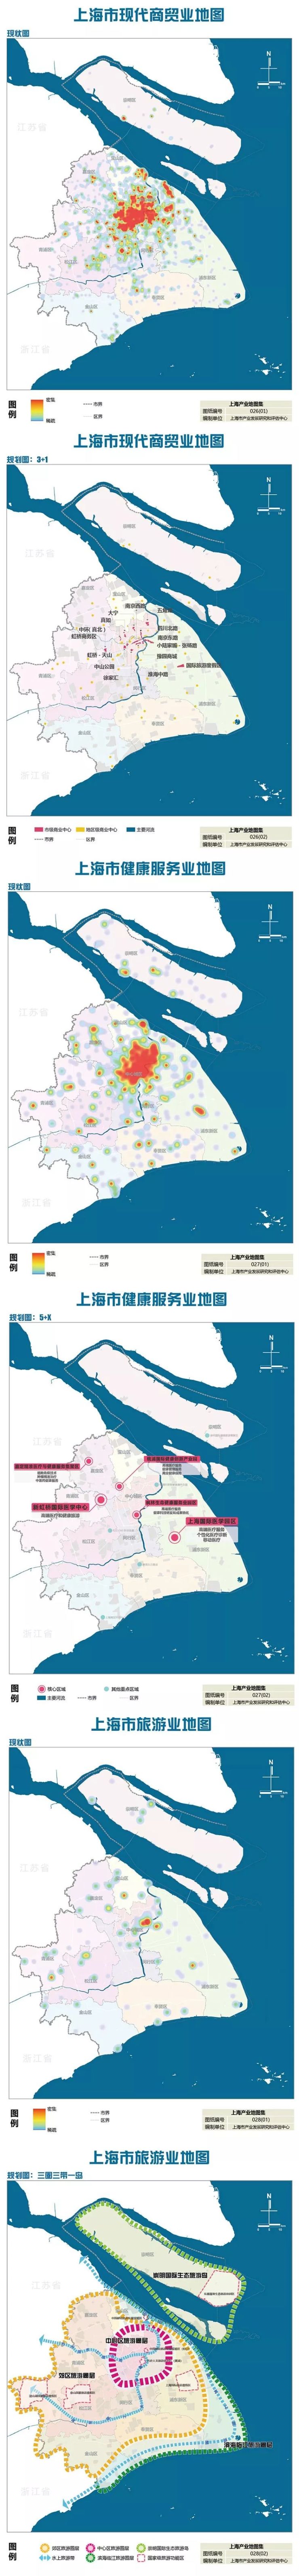 《上海市产业地图》正式出炉：未来产业发展的布局图、作战图(图11)